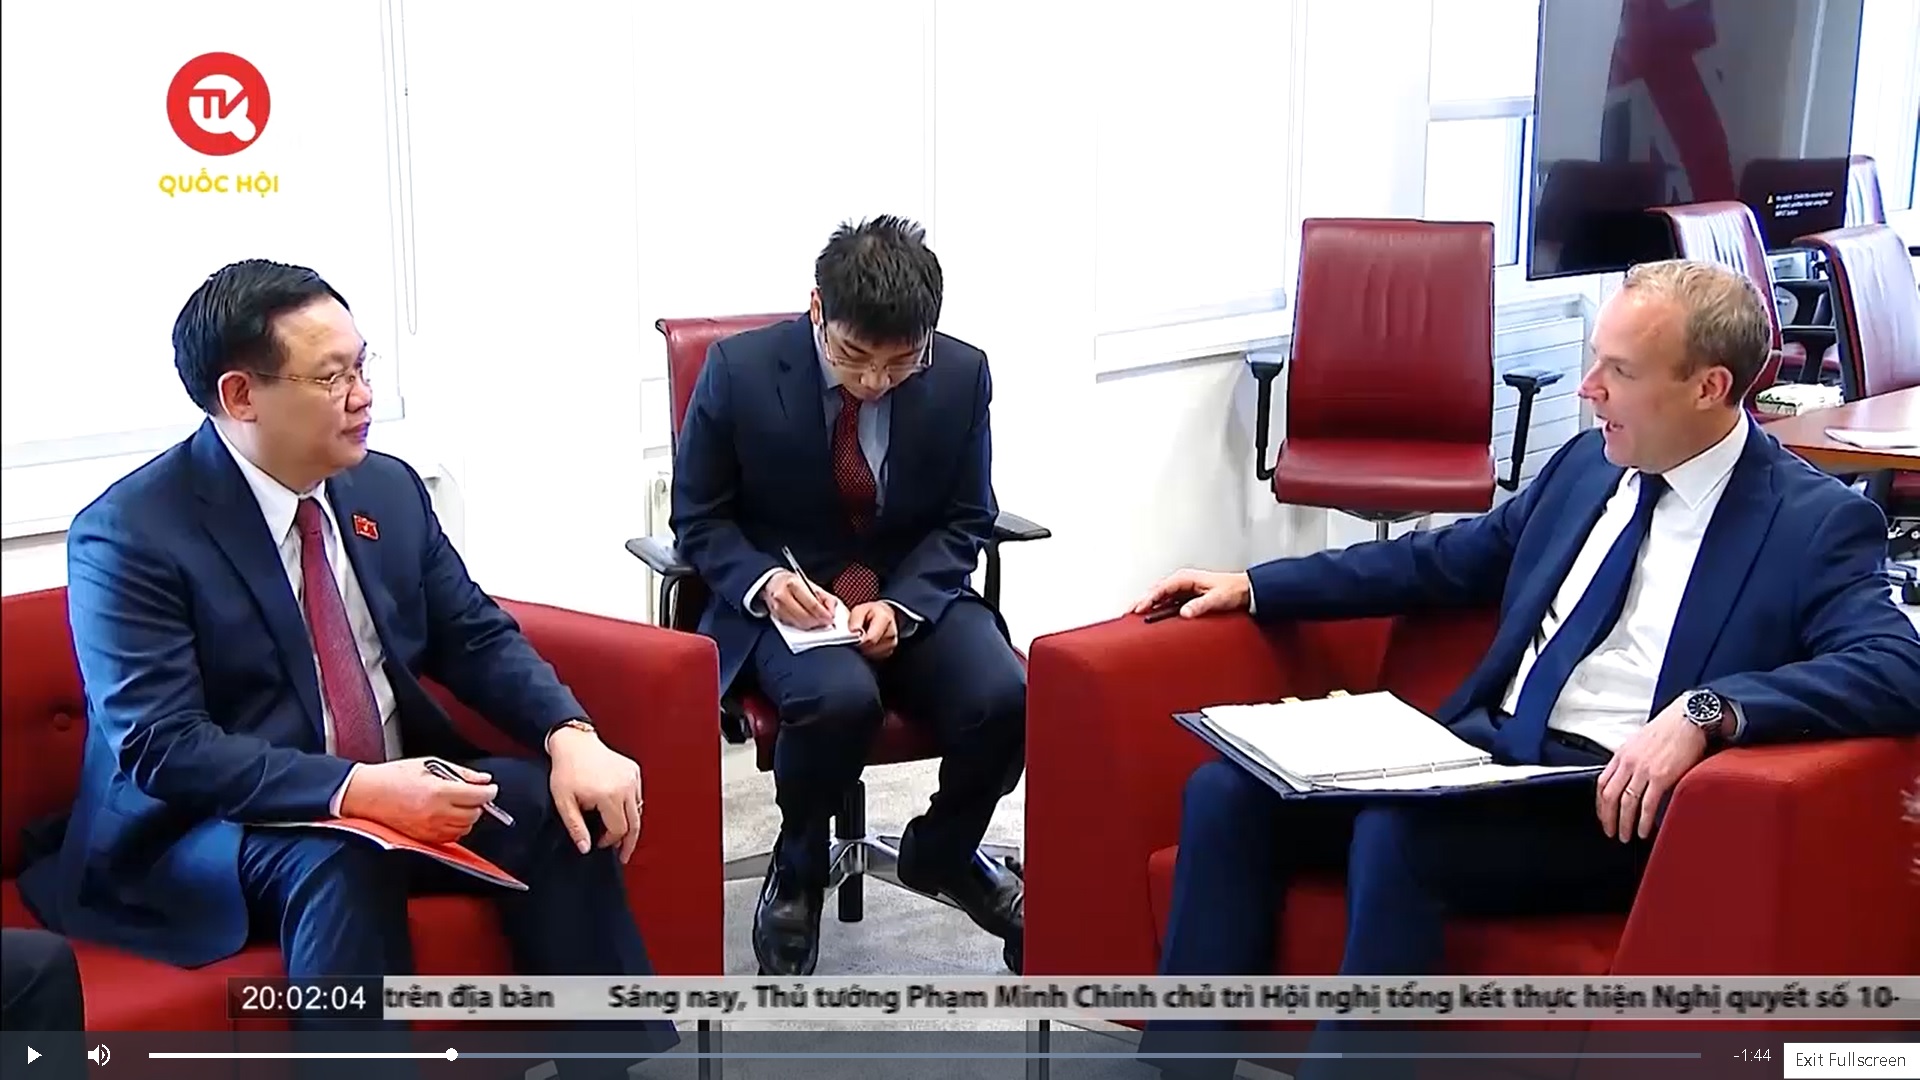 Chủ tịch Quốc hội Vương Đình Huệ gặp Phó Thủ tướng - Bộ trưởng Bộ Tư pháp Anh